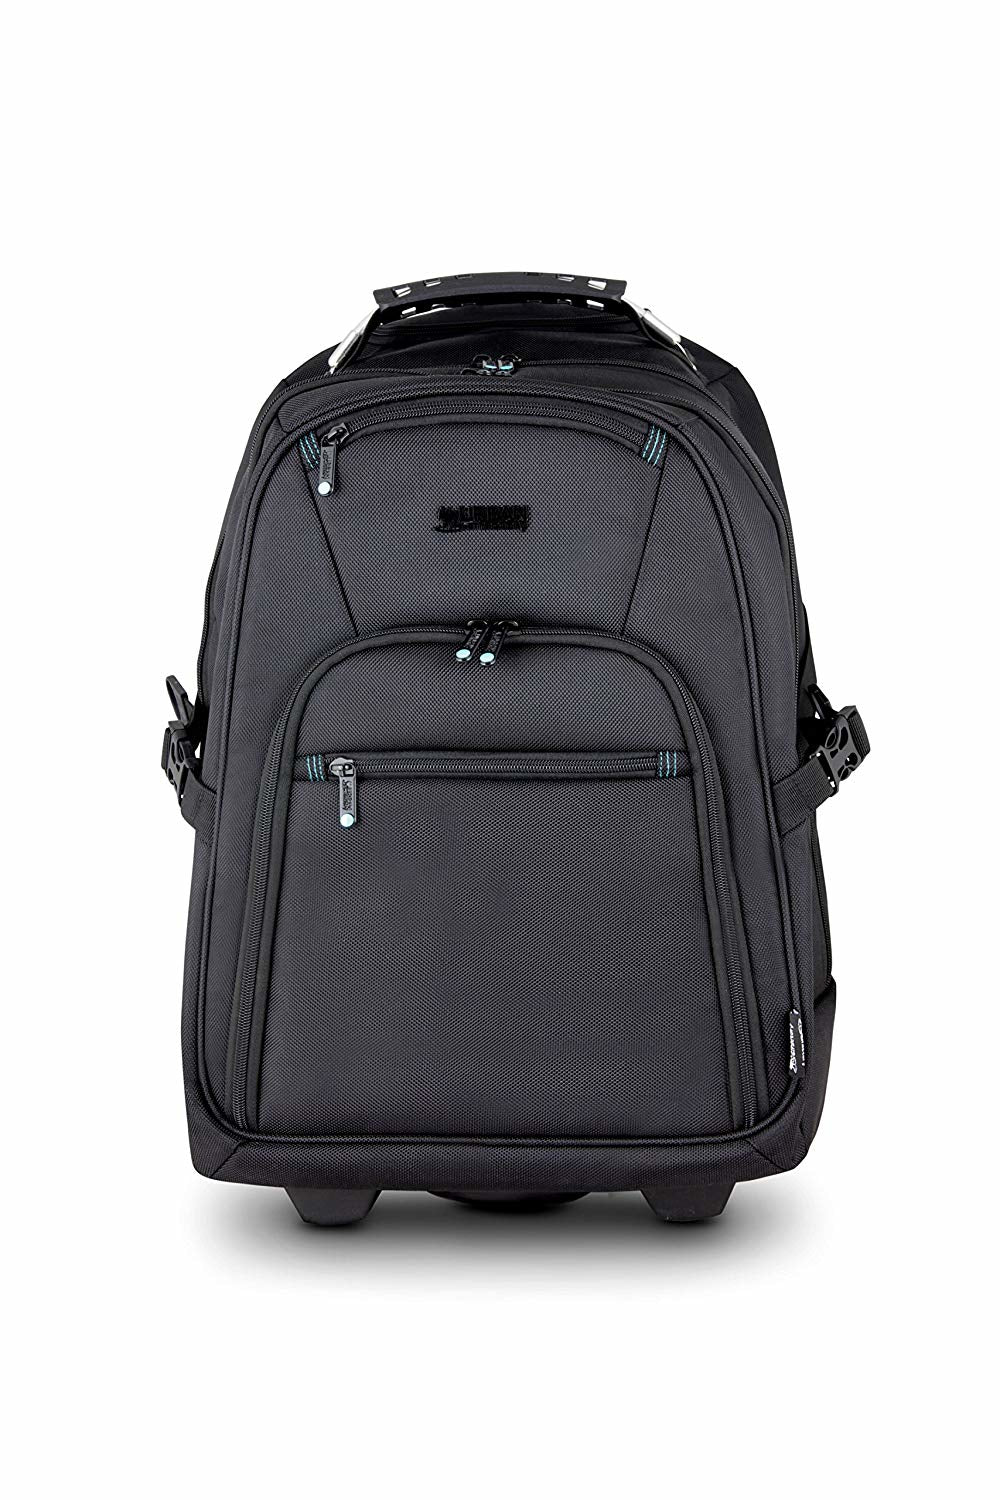 Heavee Laptop Backpack Trolley 15.6" Black